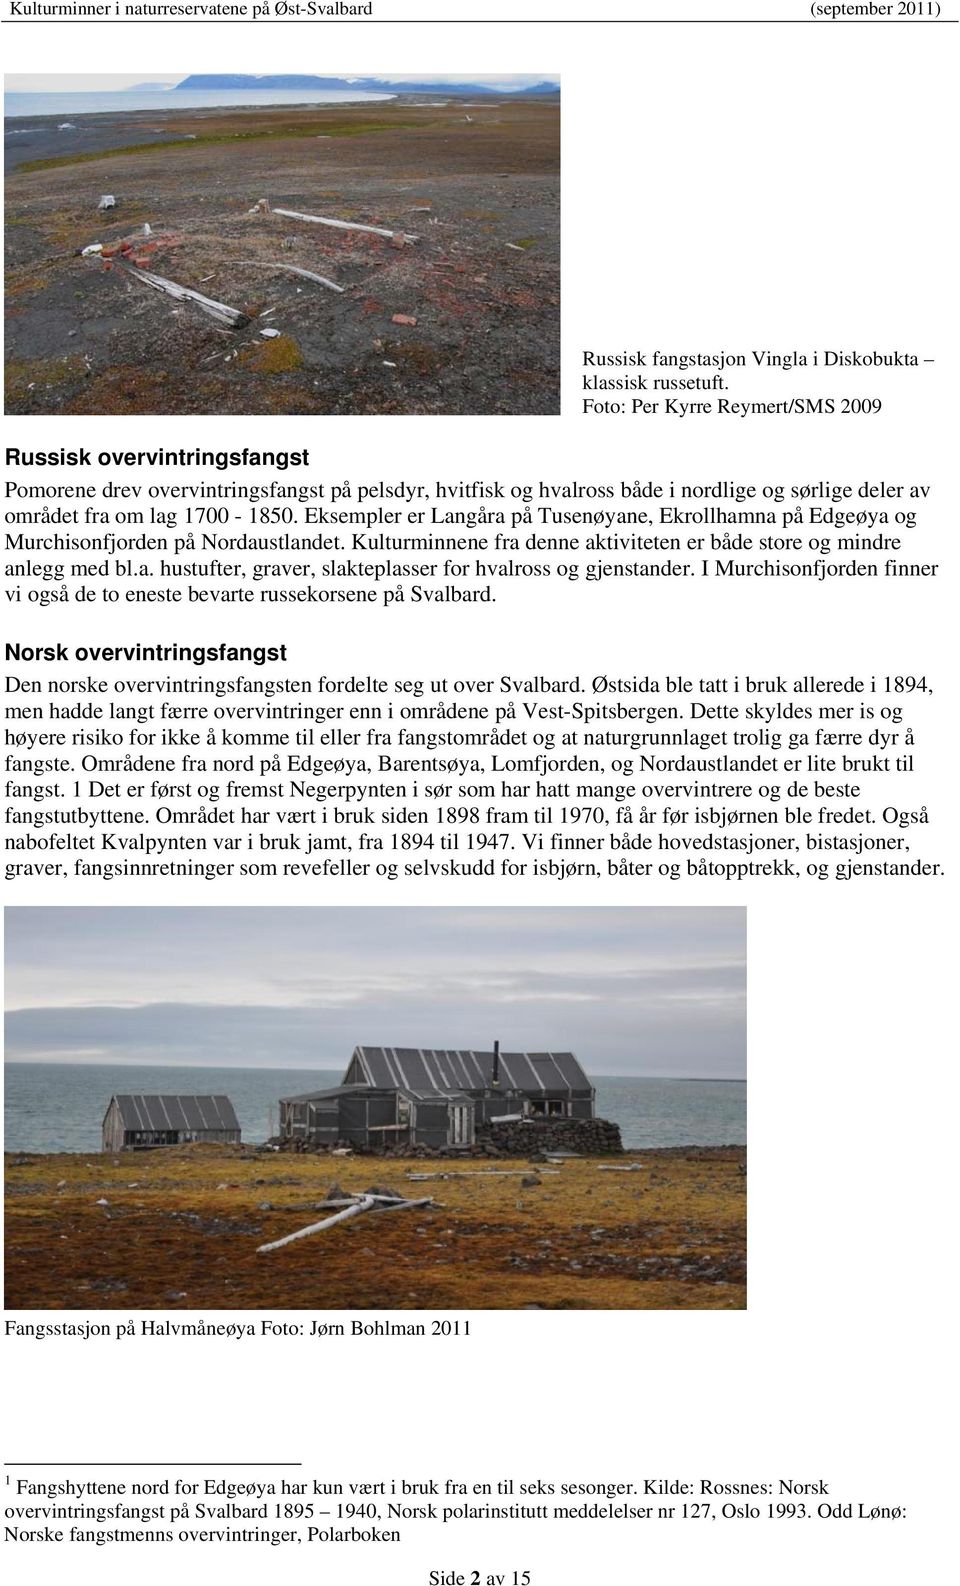 Eksempler er Langåra på Tusenøyane, Ekrollhamna på Edgeøya og Murchisonfjorden på Nordaustlandet. Kulturminnene fra denne aktiviteten er både store og mindre anlegg med bl.a. hustufter, graver, slakteplasser for hvalross og gjenstander.